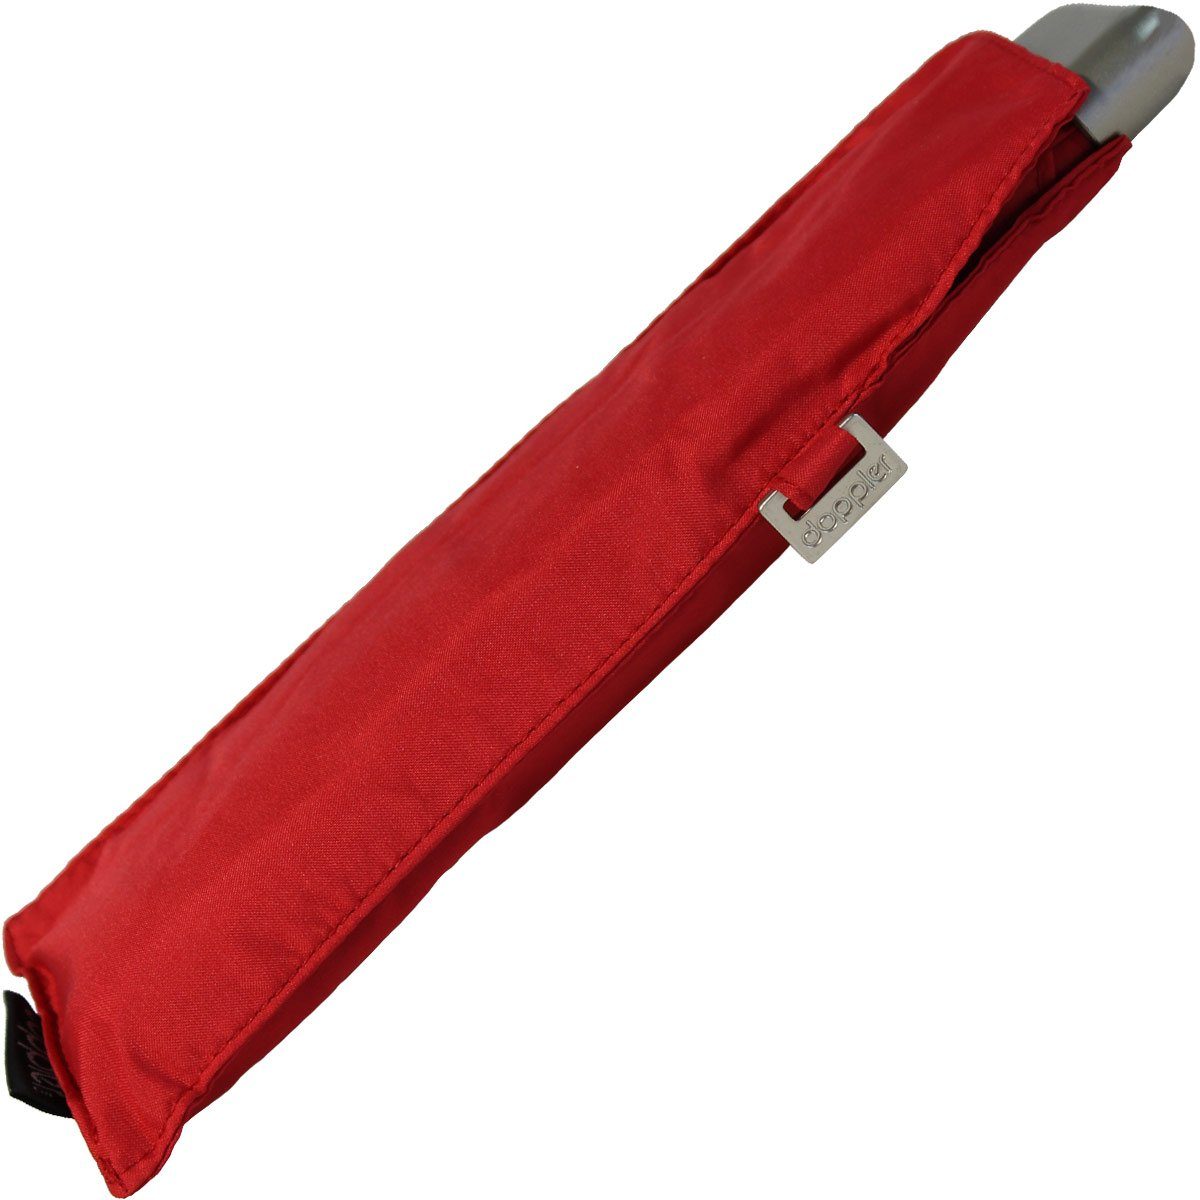 rot leichter dieser Taschenregenschirm Schirm Tasche, für Platz überall findet jede und ein doppler® treue flacher Begleiter